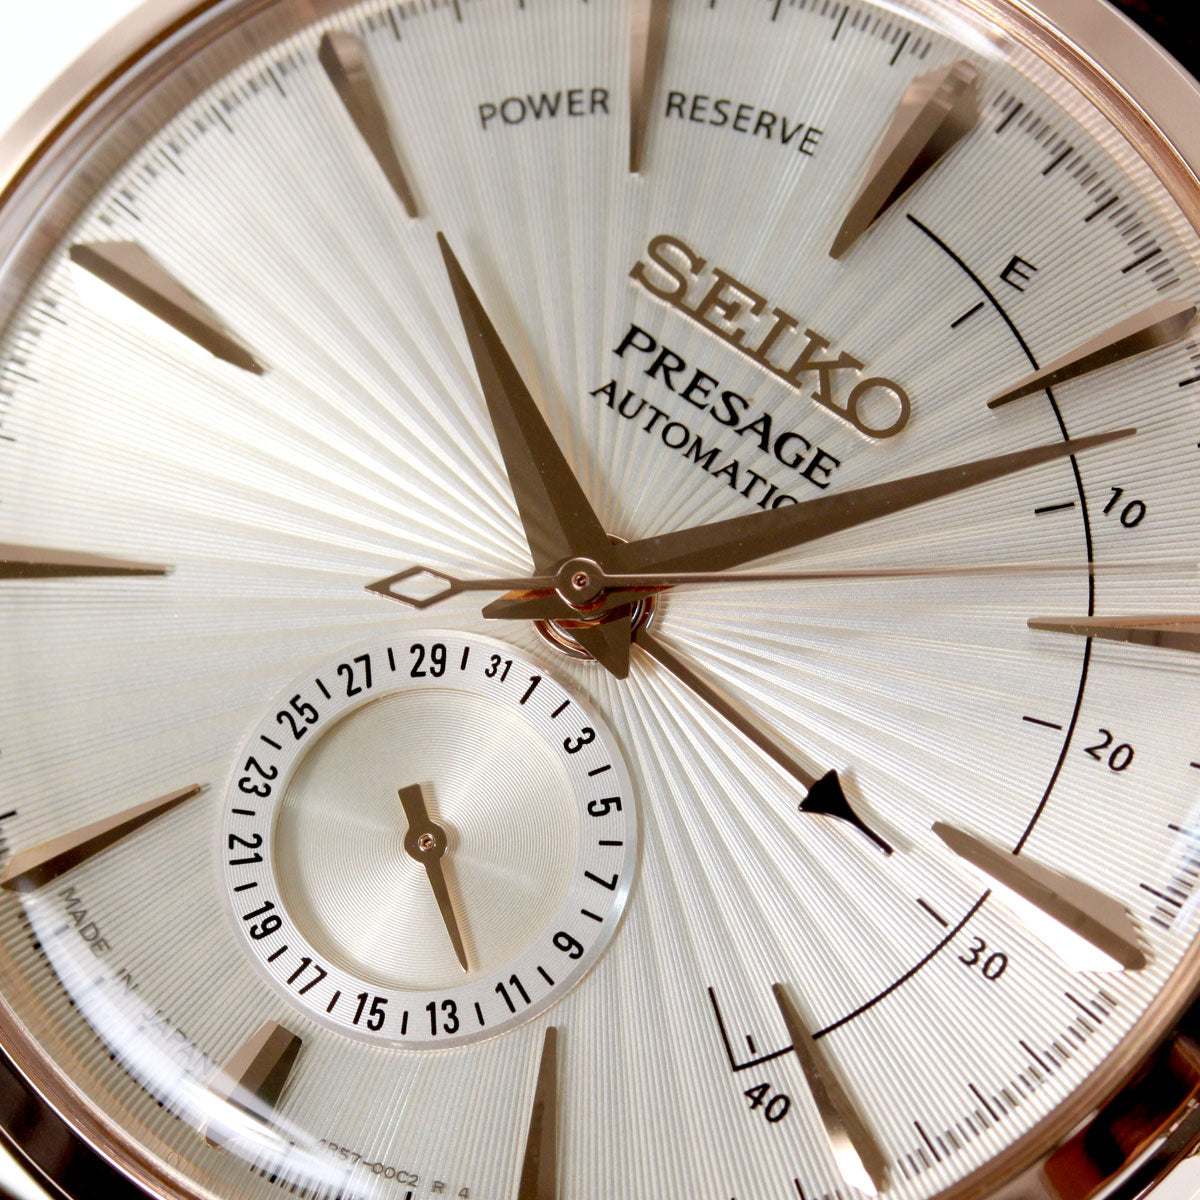 セイコー プレザージュ SEIKO PRESAGE 自動巻き メカニカル 腕時計 メンズ ベーシックライン カクテルシリーズ SARY132